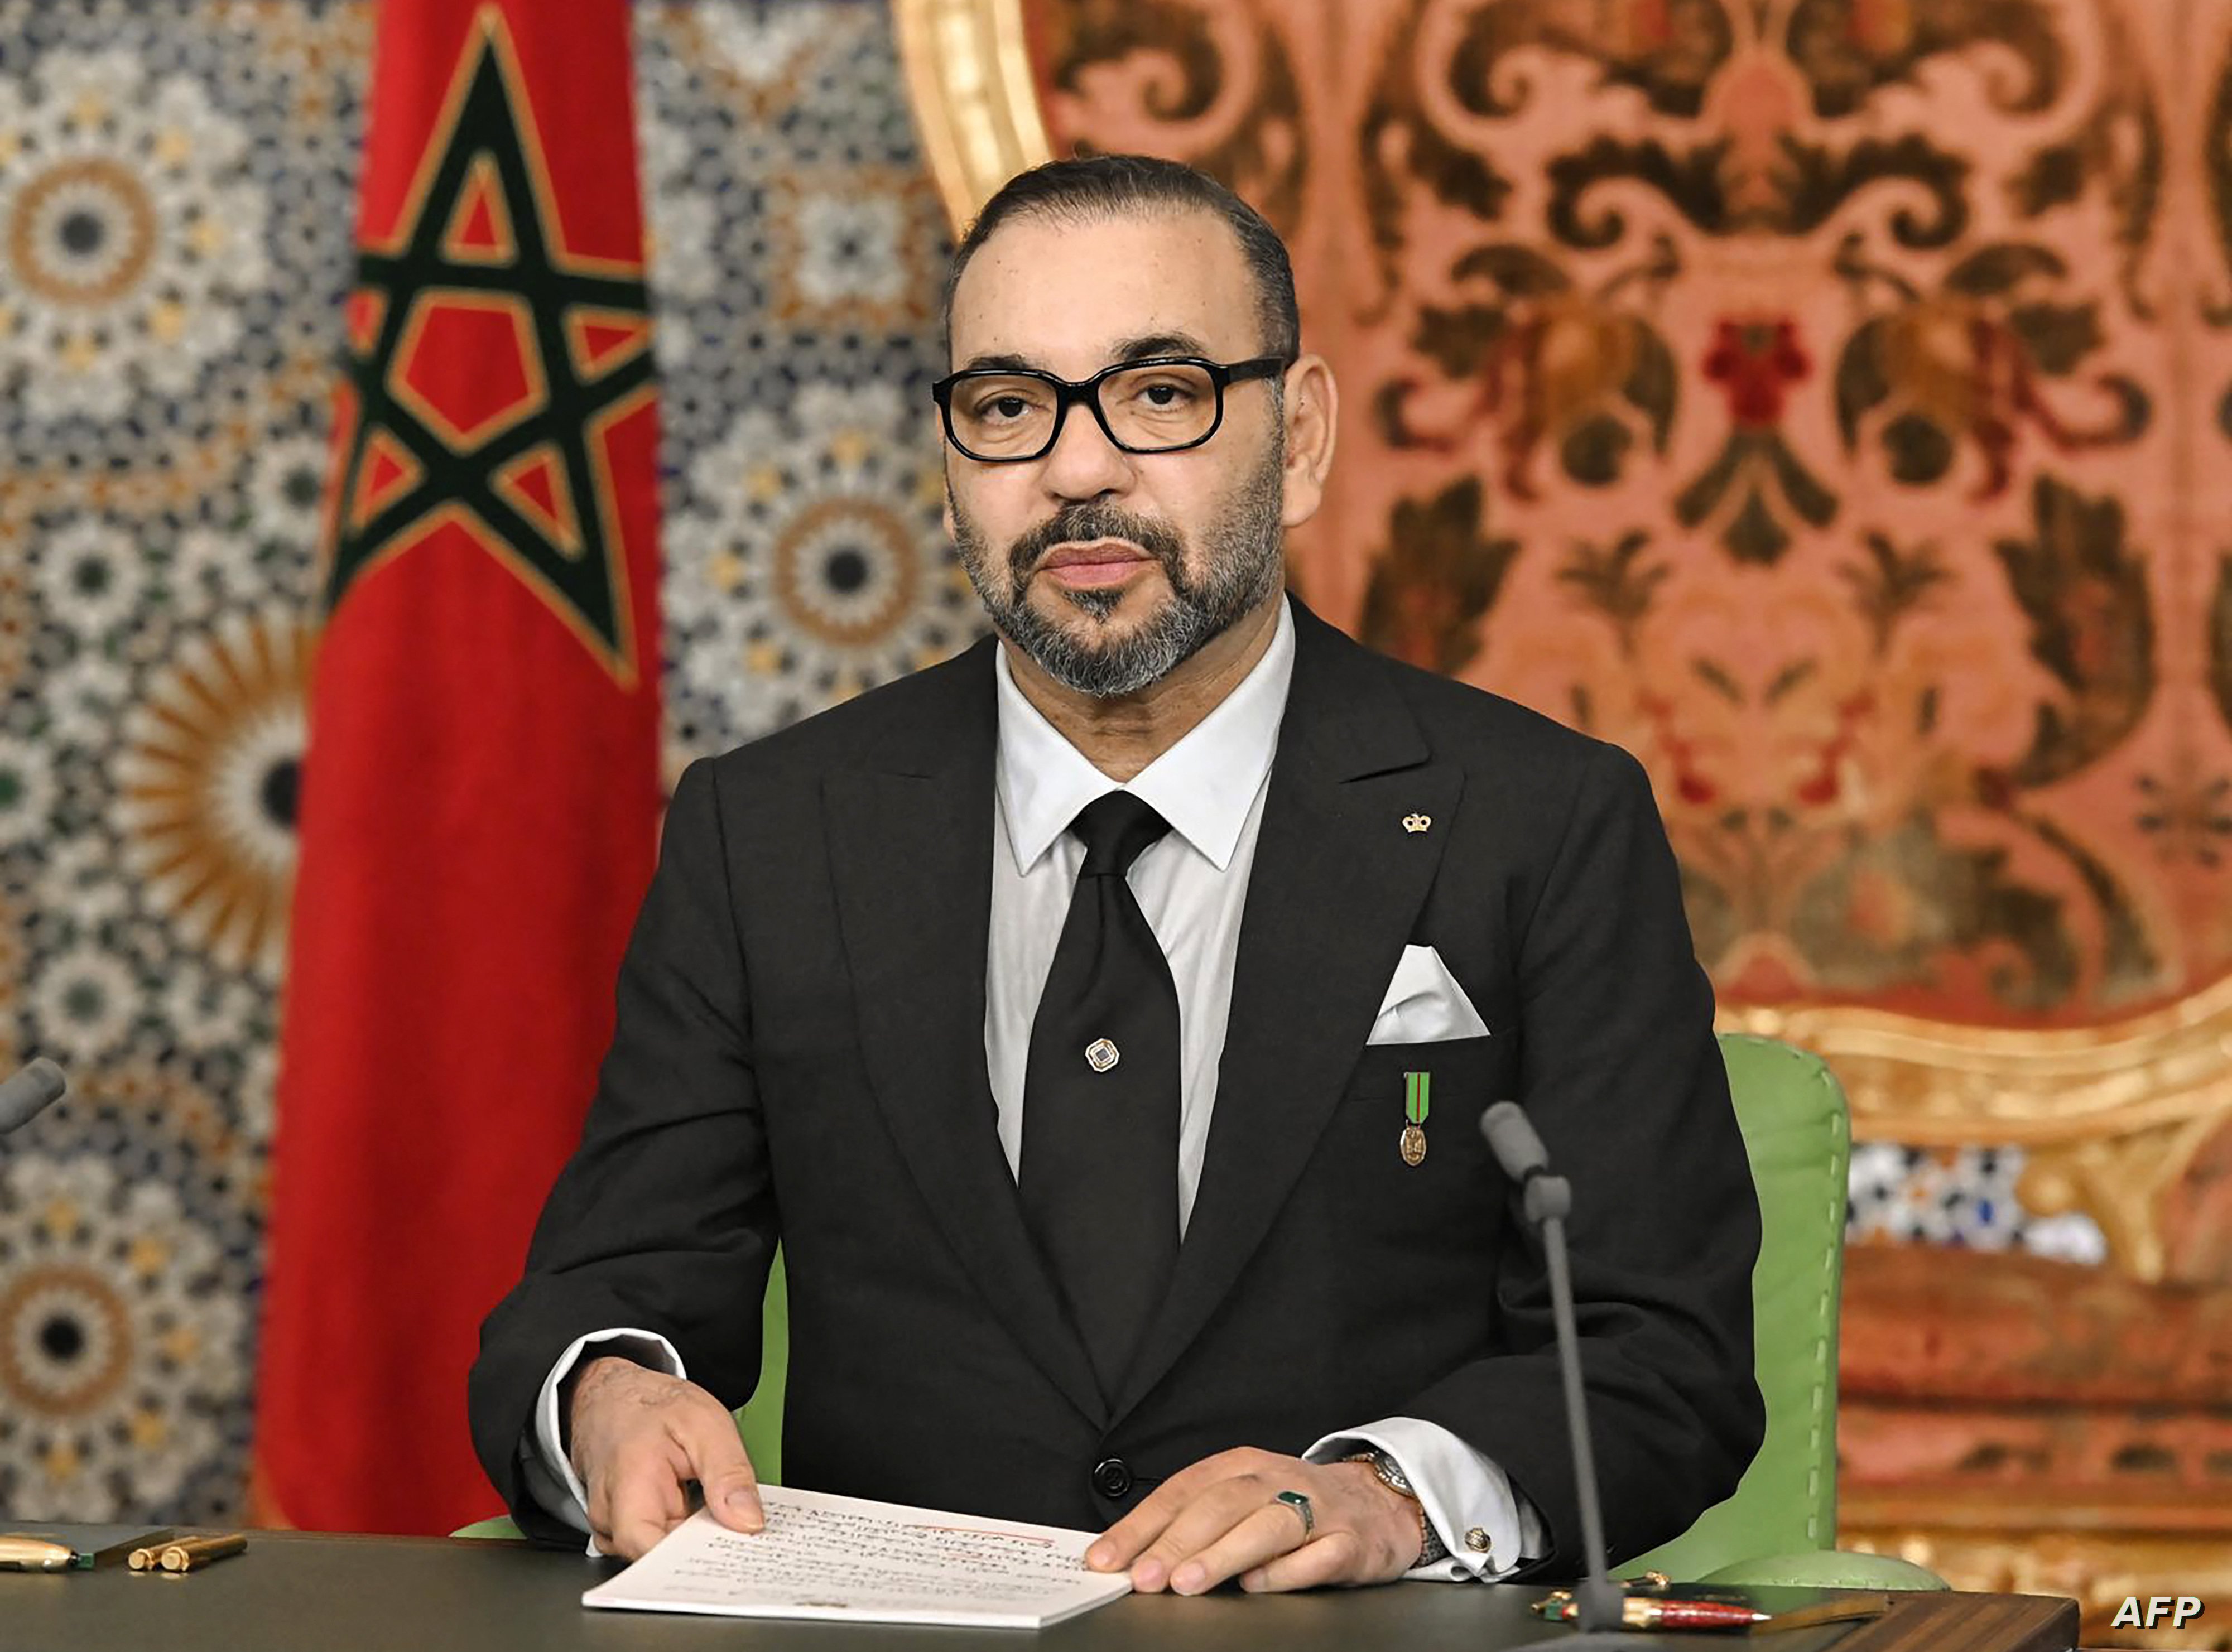 وسائط التواصل الاجتماعي تشتعل عربيًا ضد ملك المغرب !!!